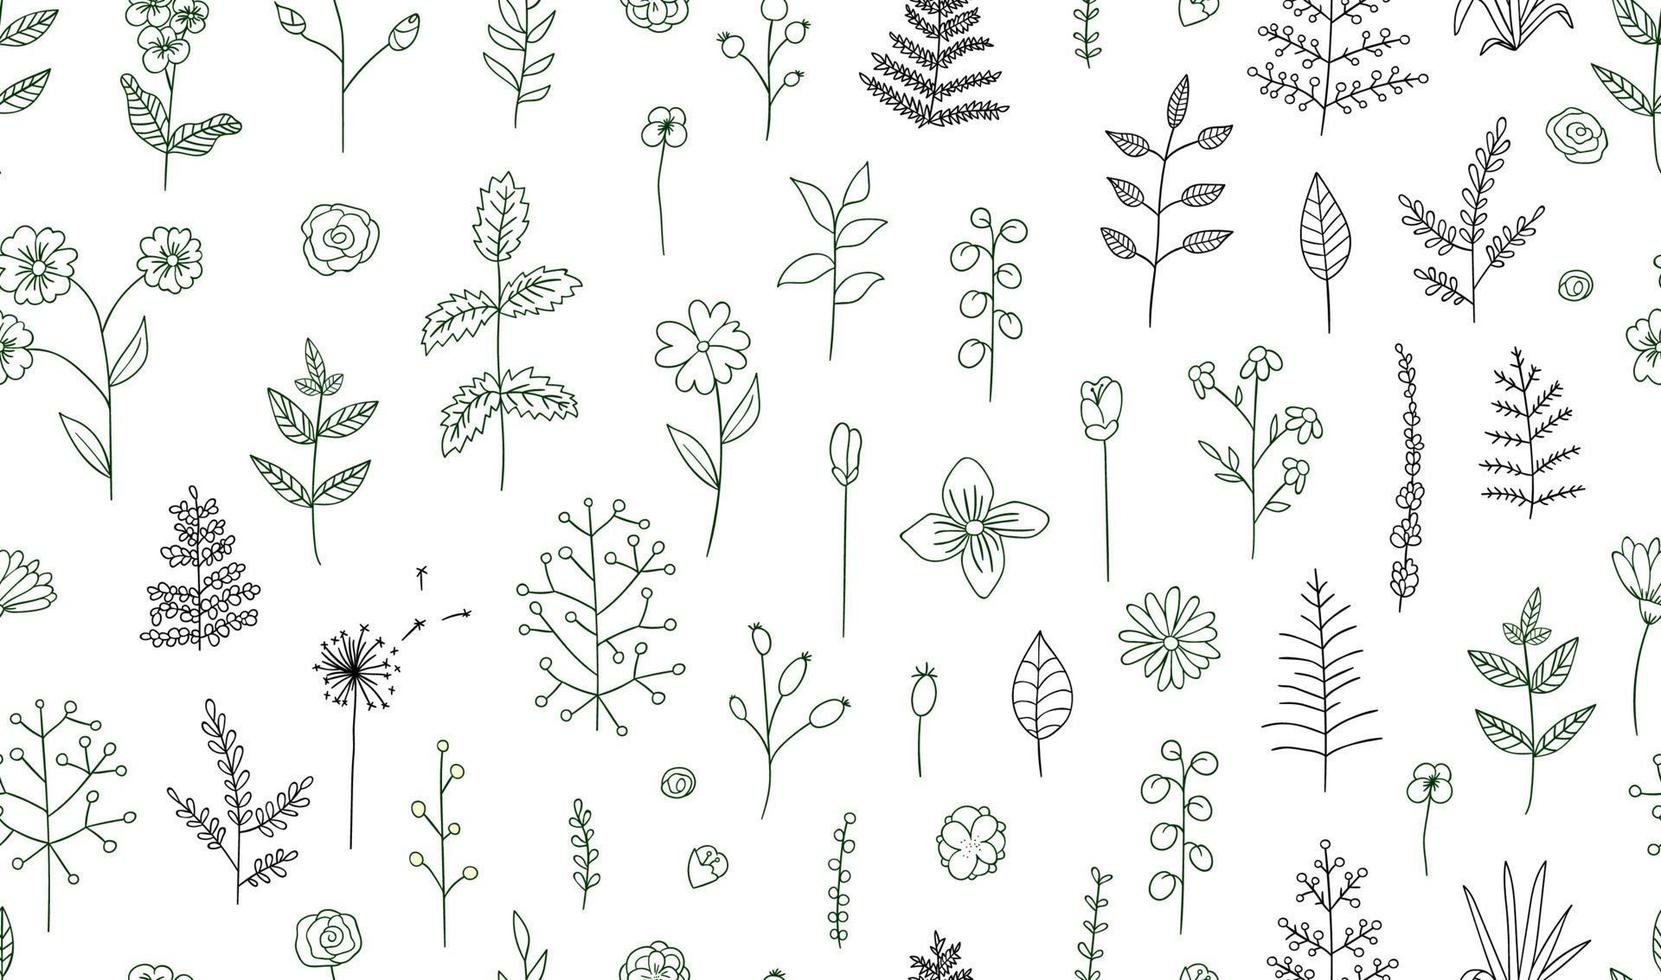 vector naadloze patroon van zwarte en witte bloemen, kruiden, planten. zwart-wit pakket elementen voor natuurlijk ontwerp. cartoon-stijl.